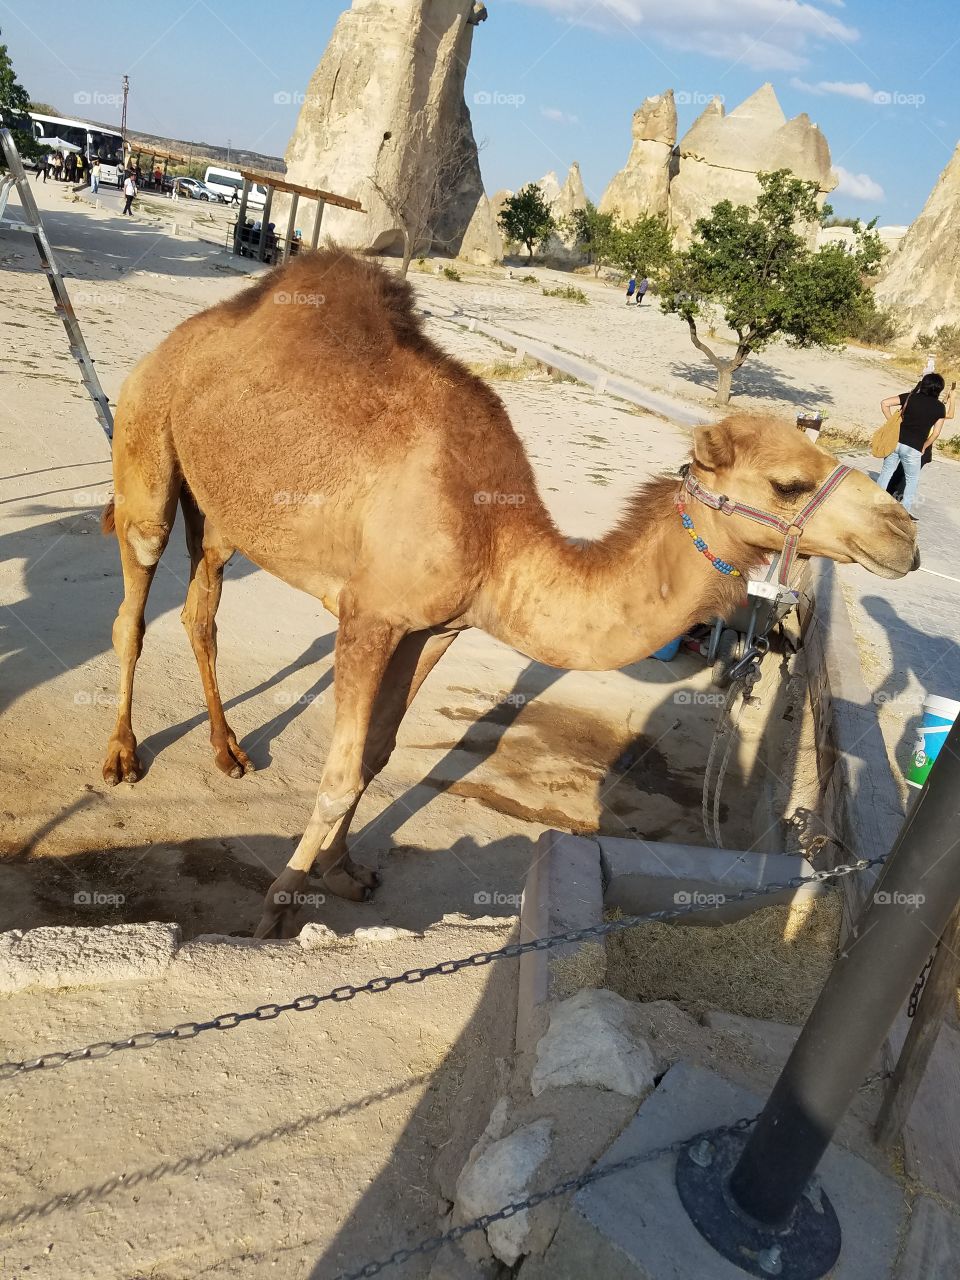 A camel in Cappadocia Turkey